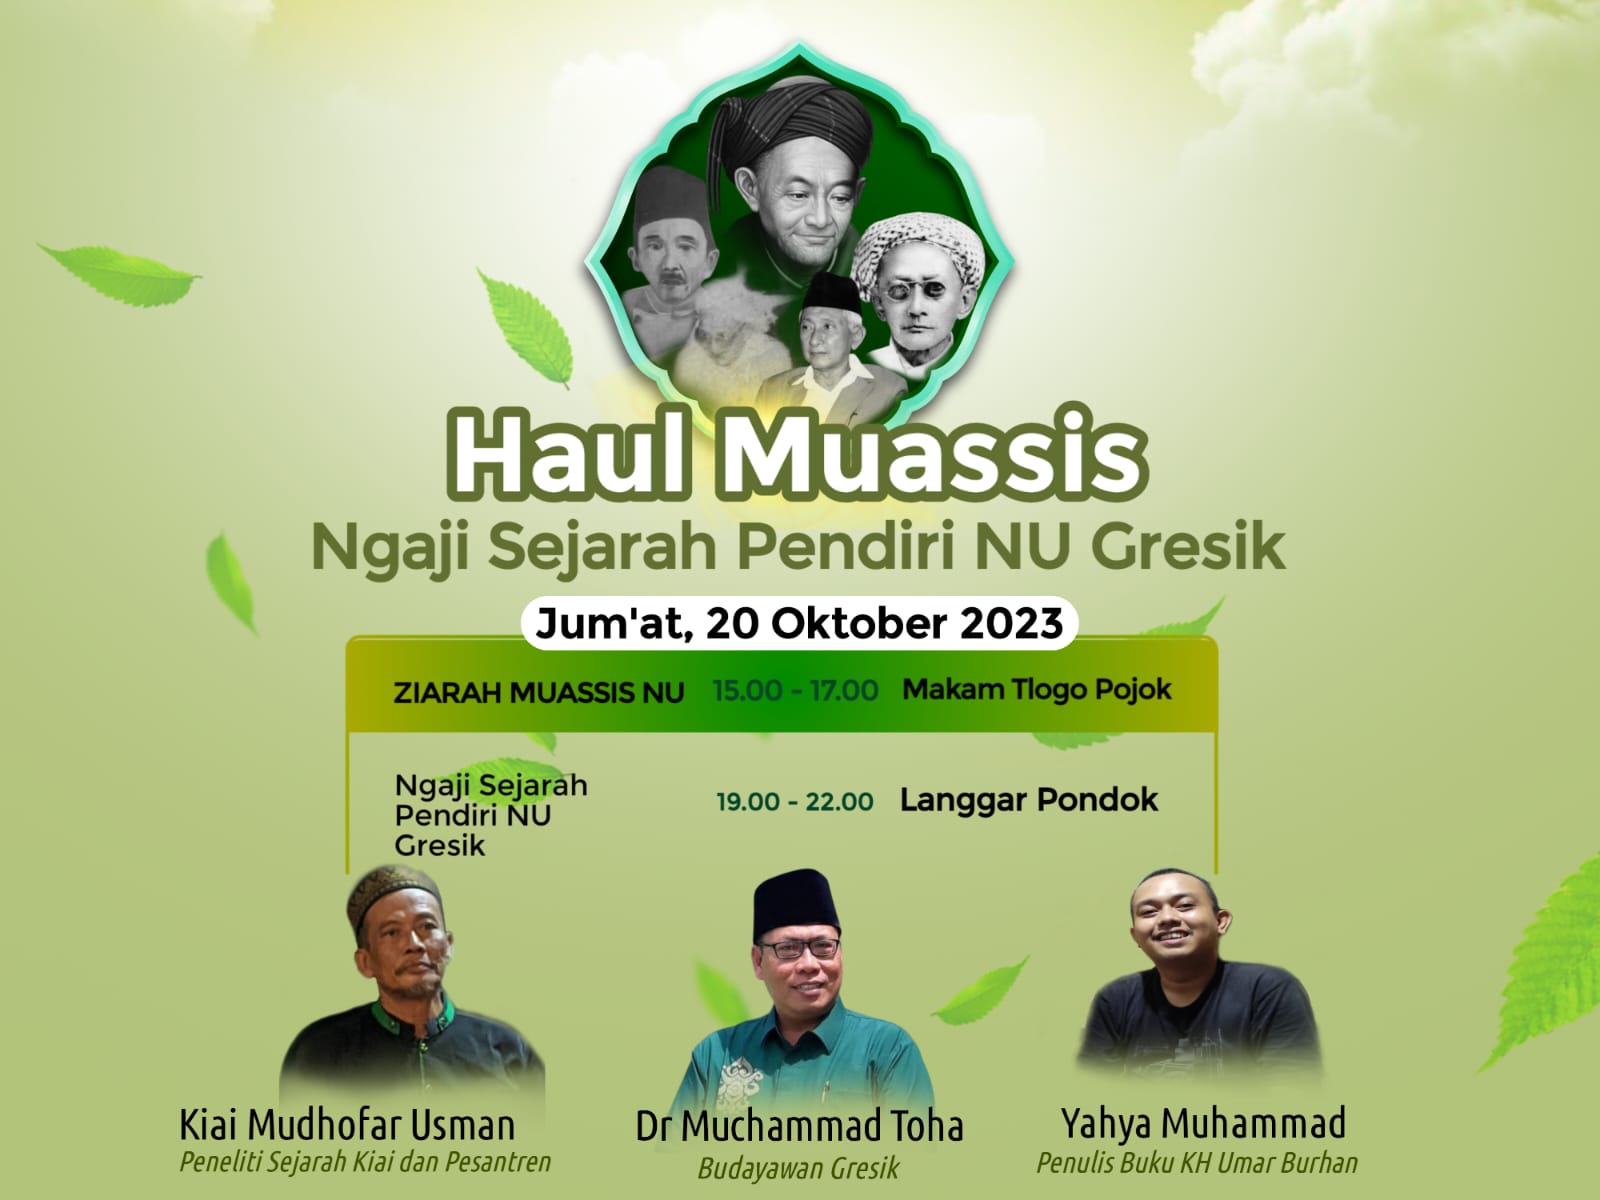 Flyer Publikasi Haul Muassis dan Ngaji Sejarah Pendiri NU Gresik. Foto/ilustrasi: ist/NUGres